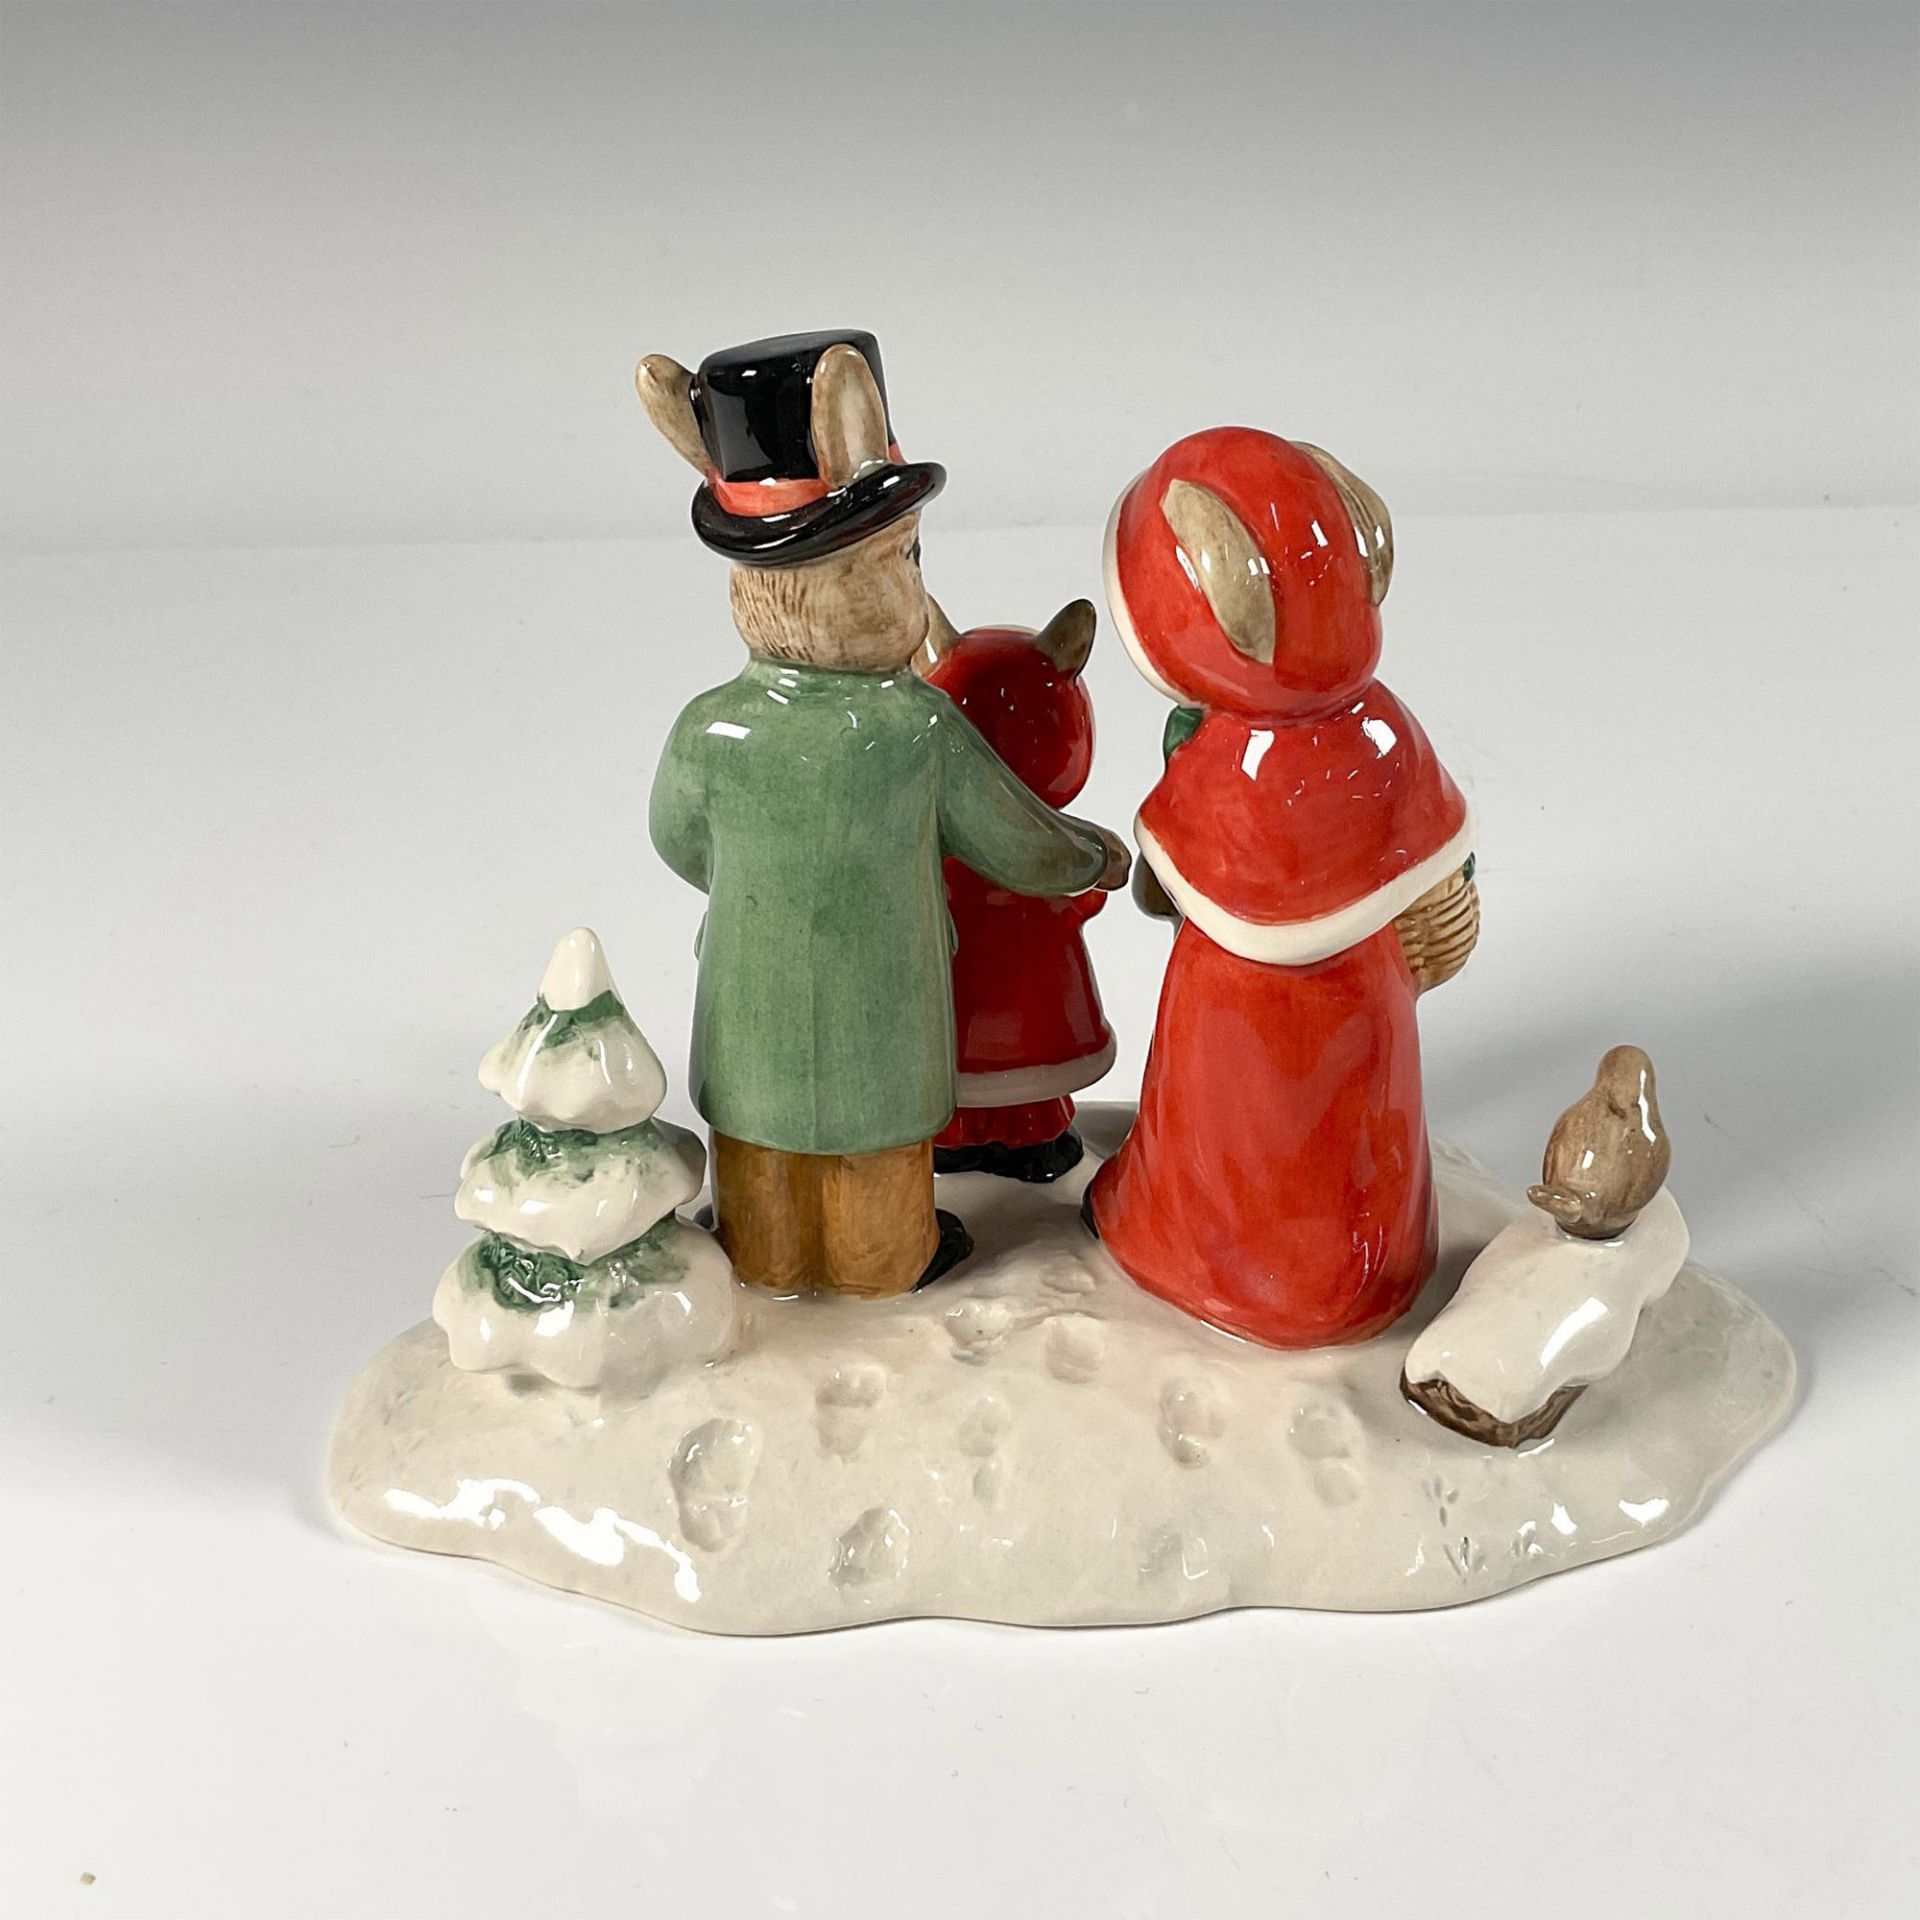 Royal Doulton Bunnykins Figurine, Merry Christmas DB194 - Image 2 of 3